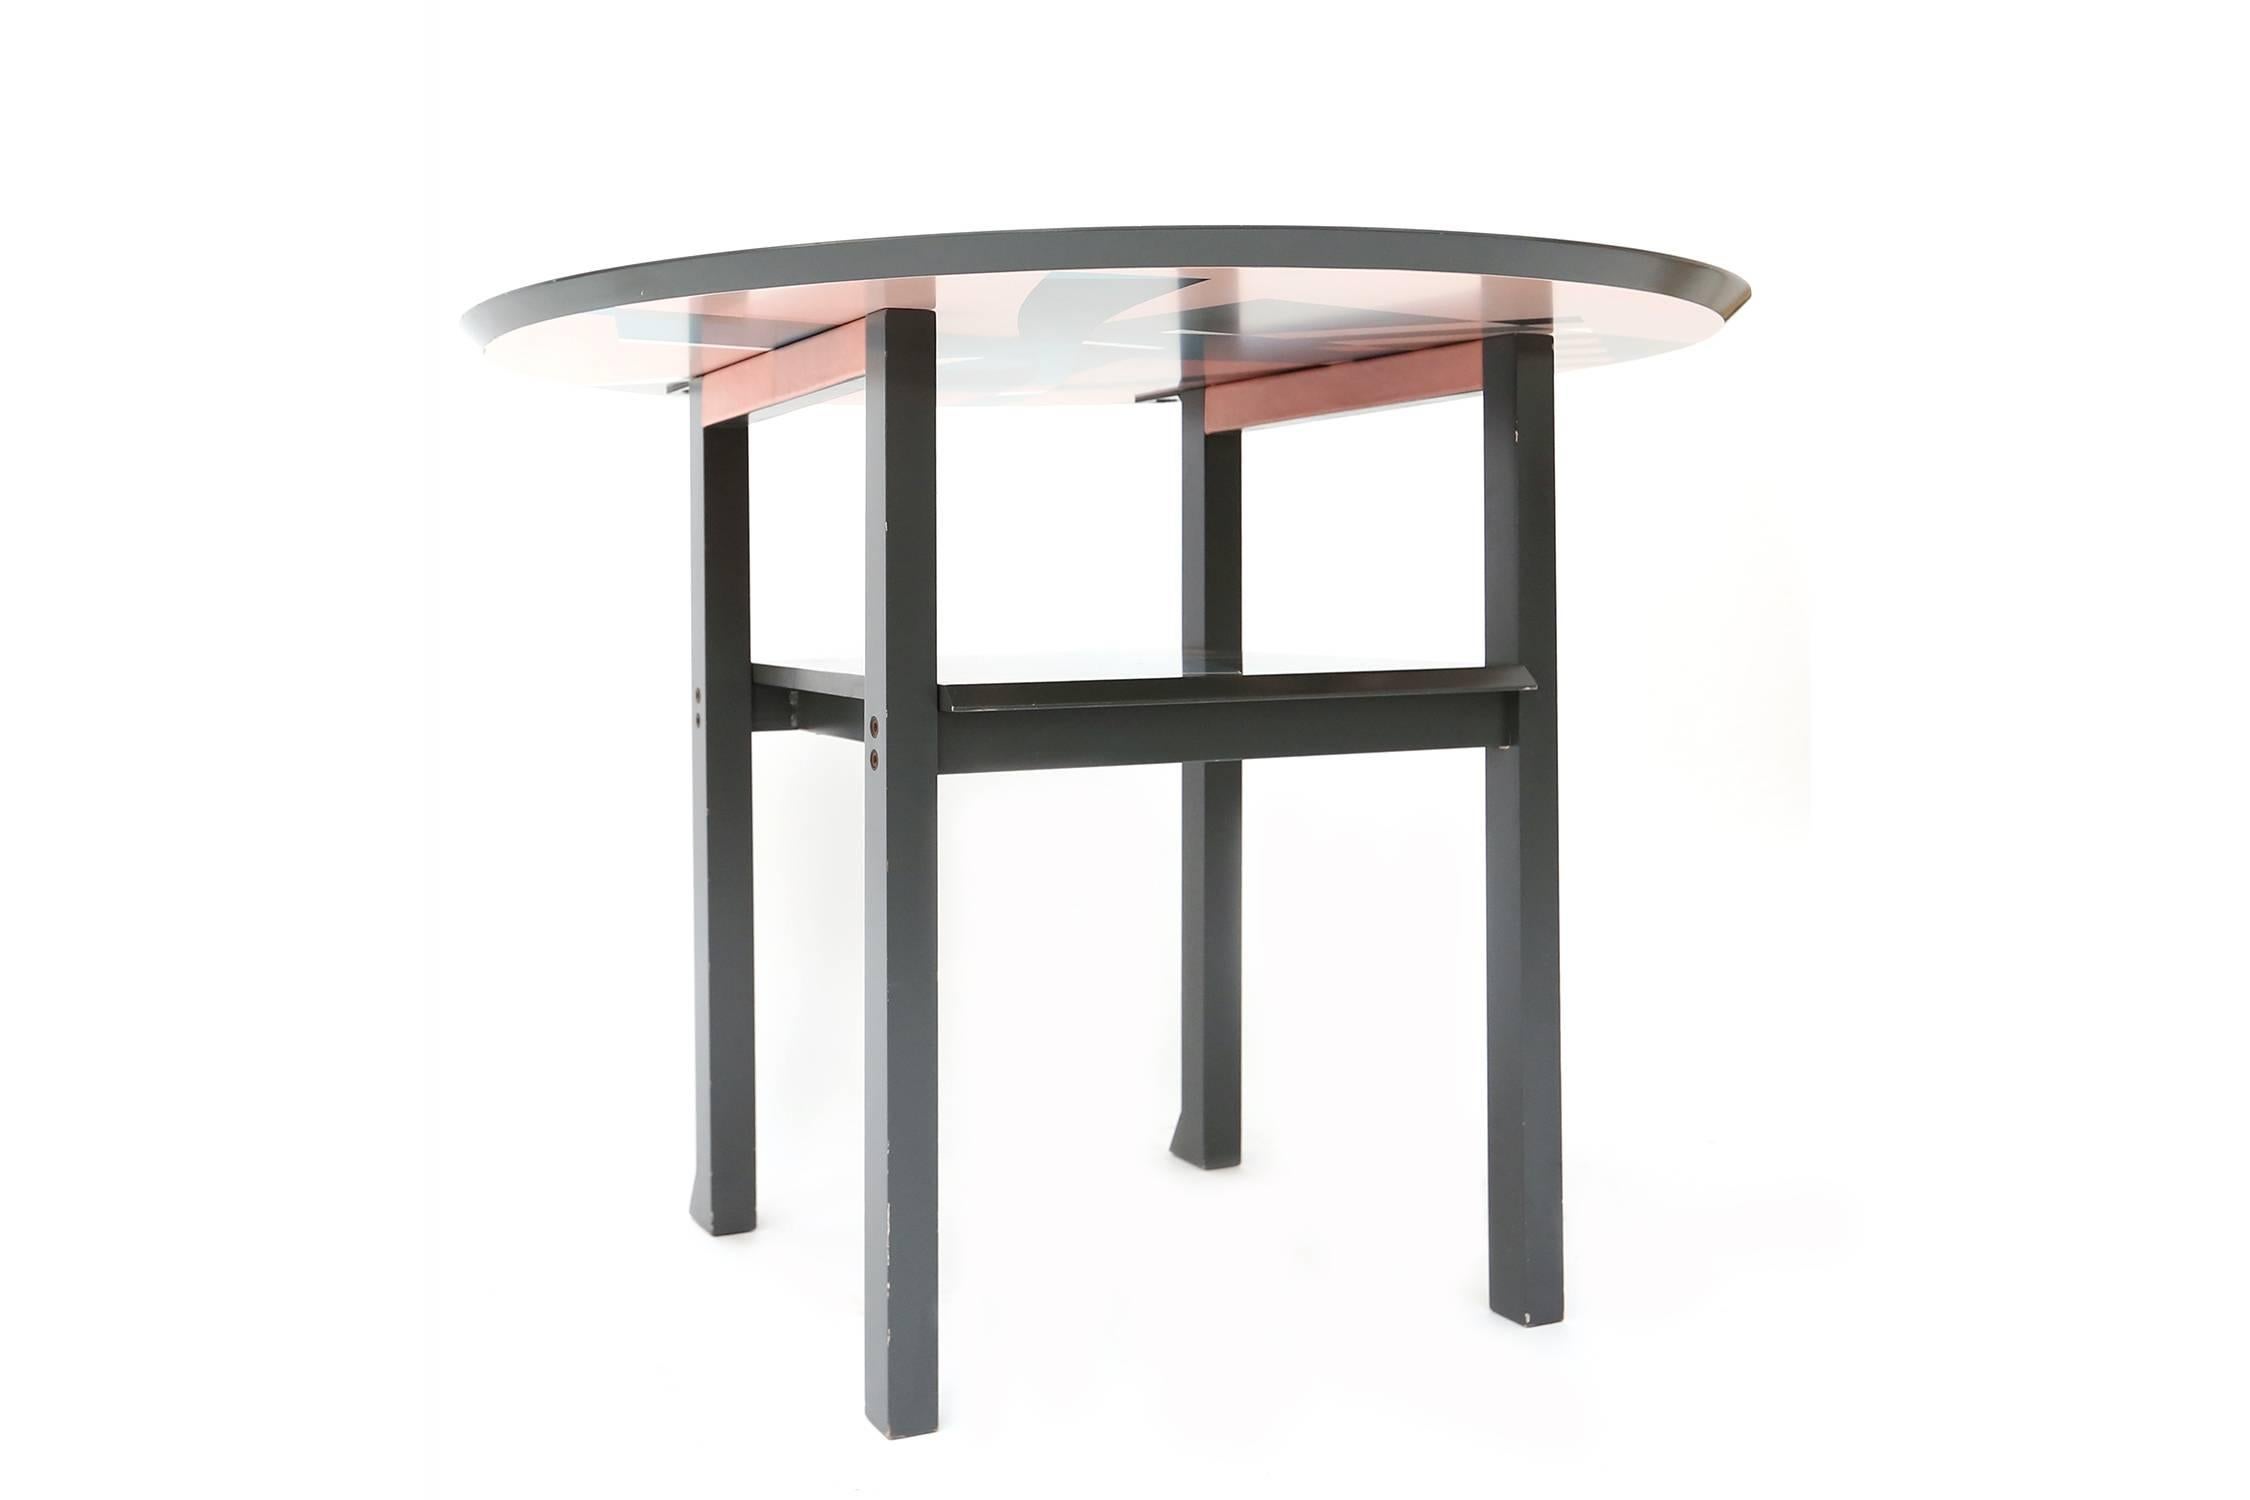 Memphis table chair
Zabro designer Alessandro Mendini.
Manufacturer Zanotta, Italy, 1984.